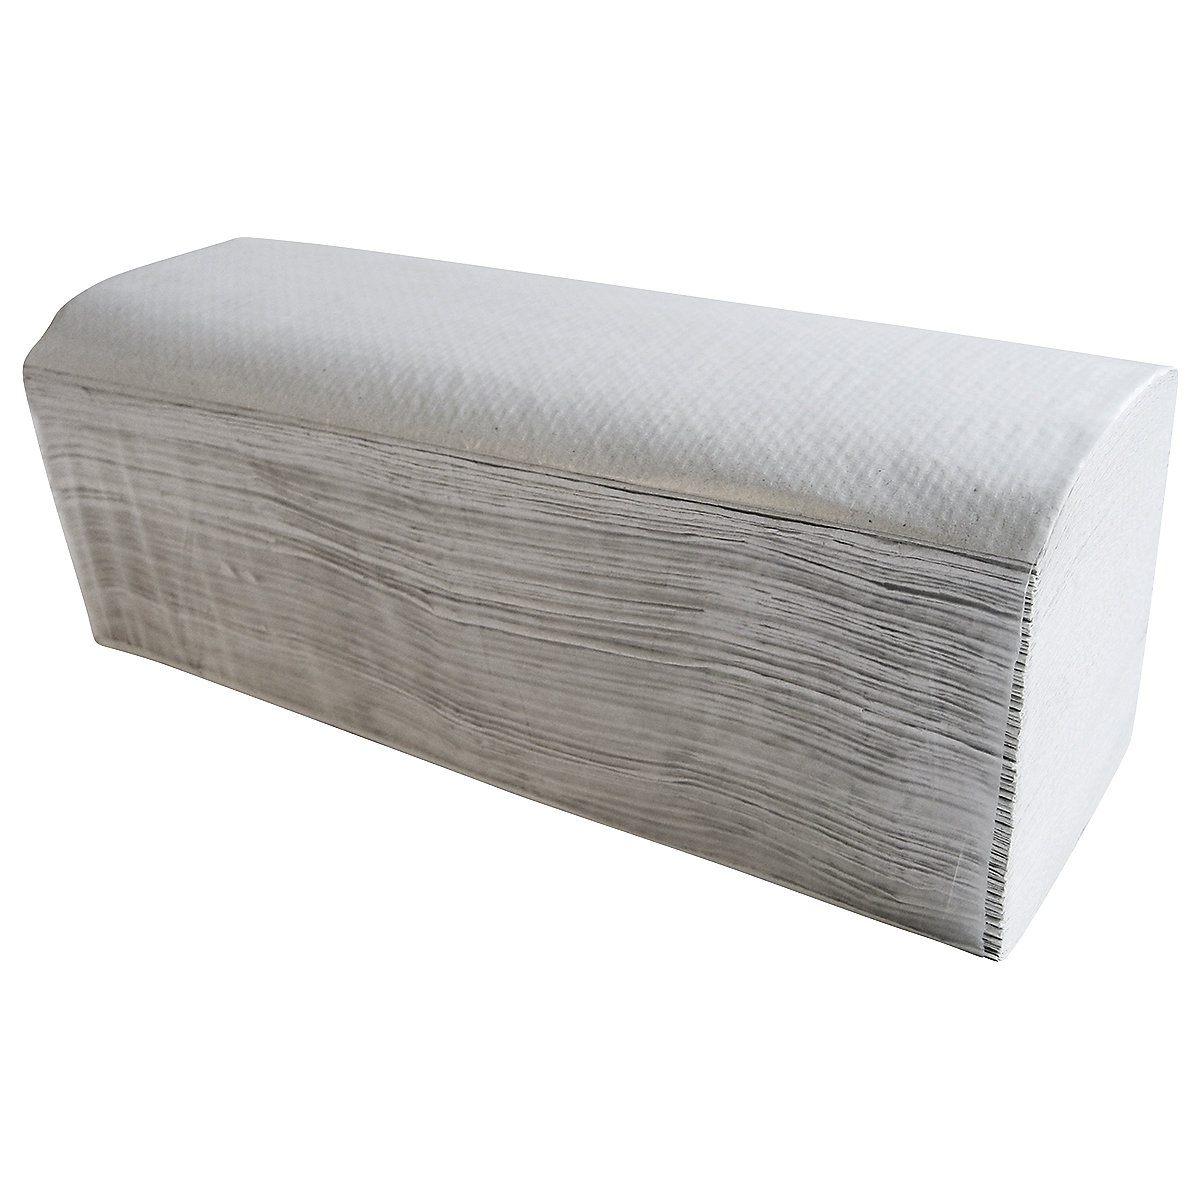 Toalhetes de papel dobrado reciclados - CWS